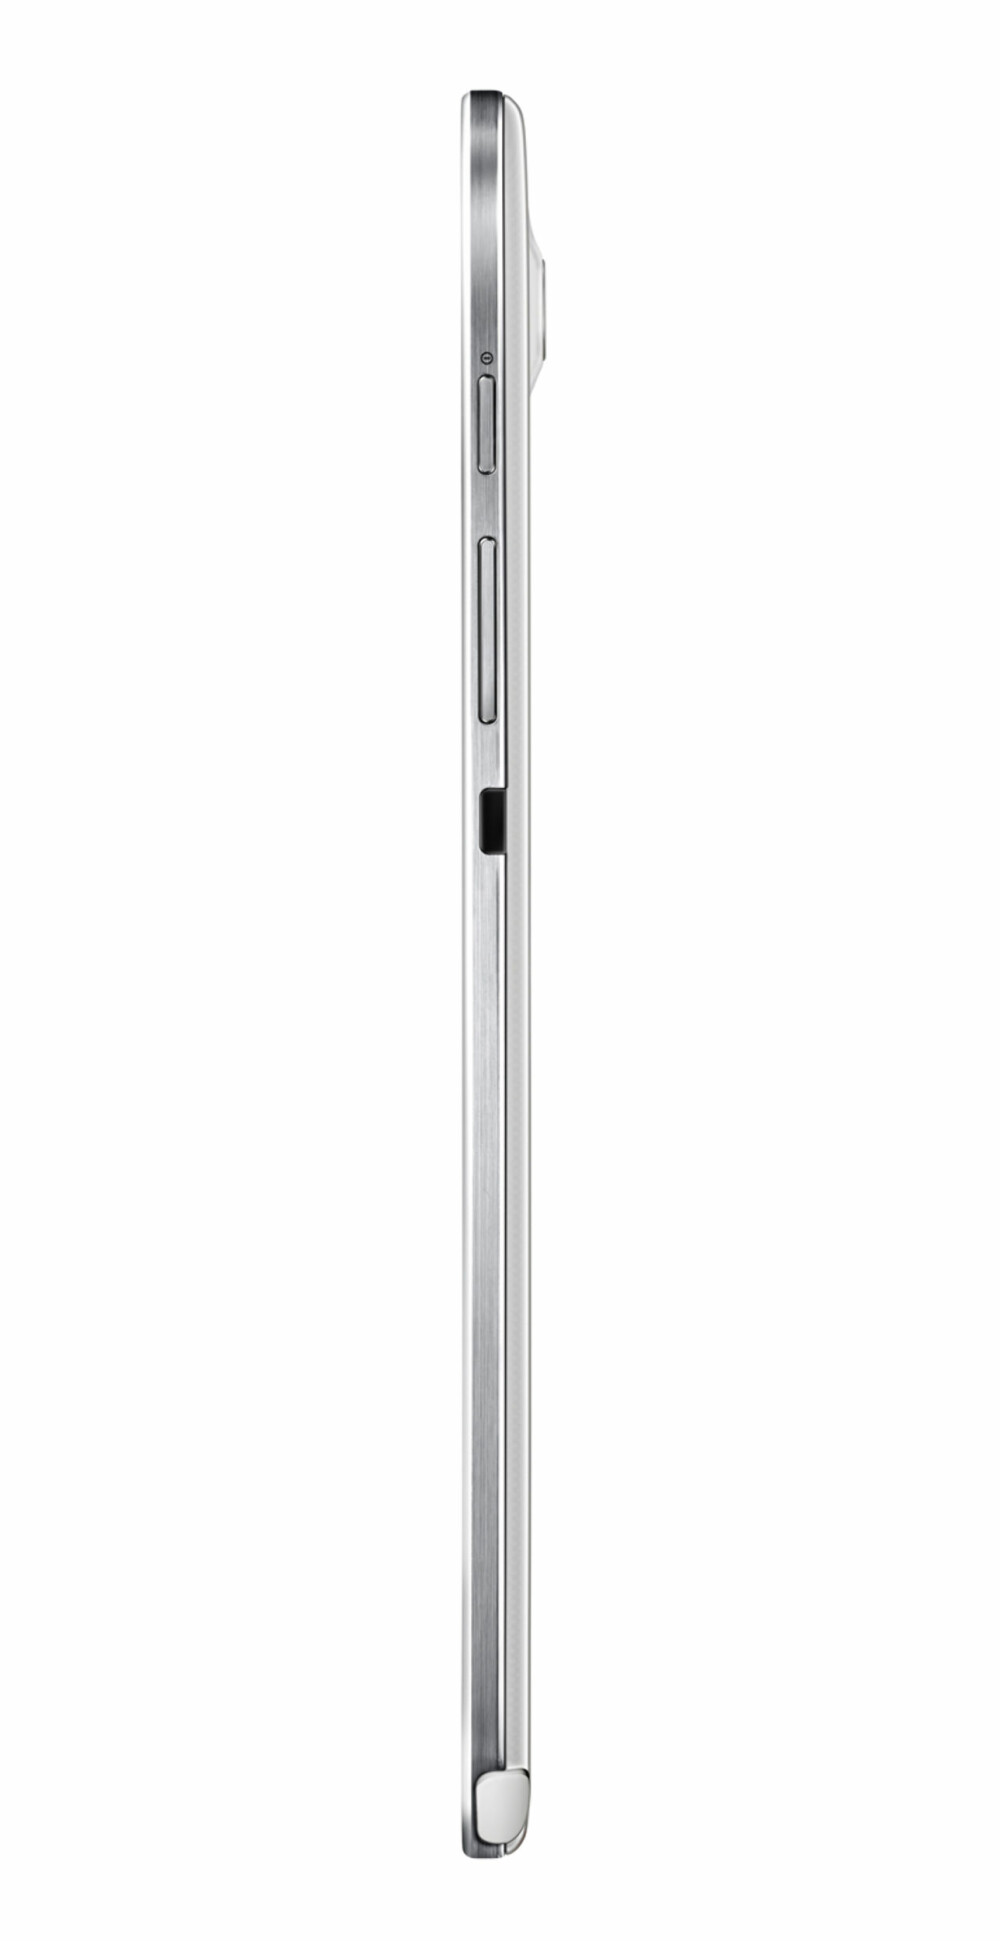 SMAL: Galaxy Note 8 er et smalt nettbrett. Dessverre stikker kameraet ut, noe som vi antar vil gjøre at nettbrettet ikke ligger helt rolig om du vil bruke det liggende flatt på et bord.